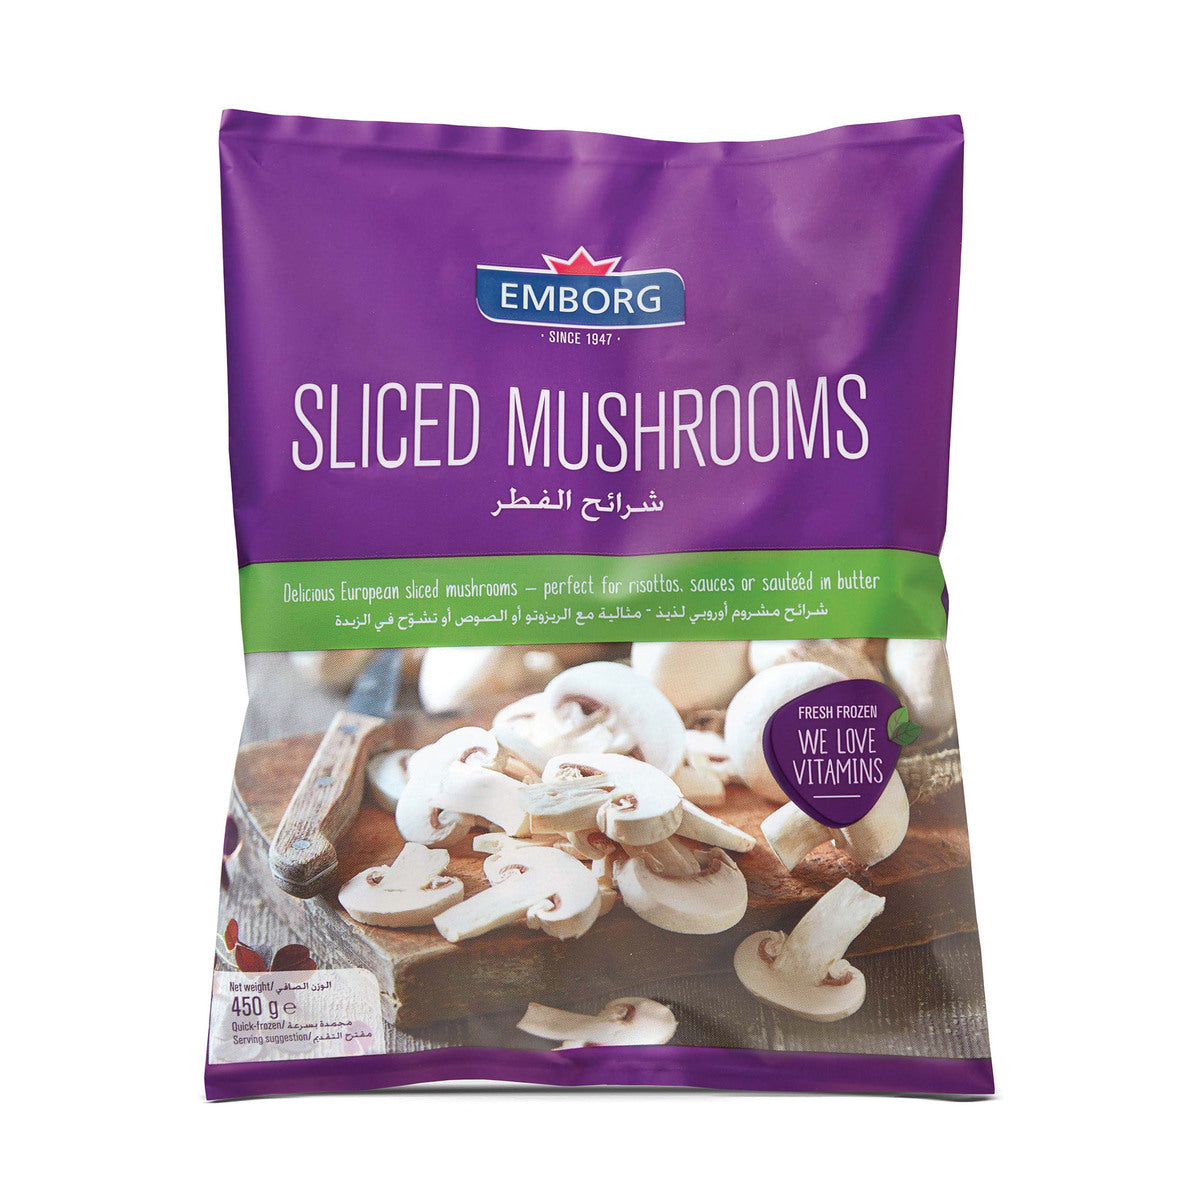 EMBORG Sliced Mushrooms, 450g